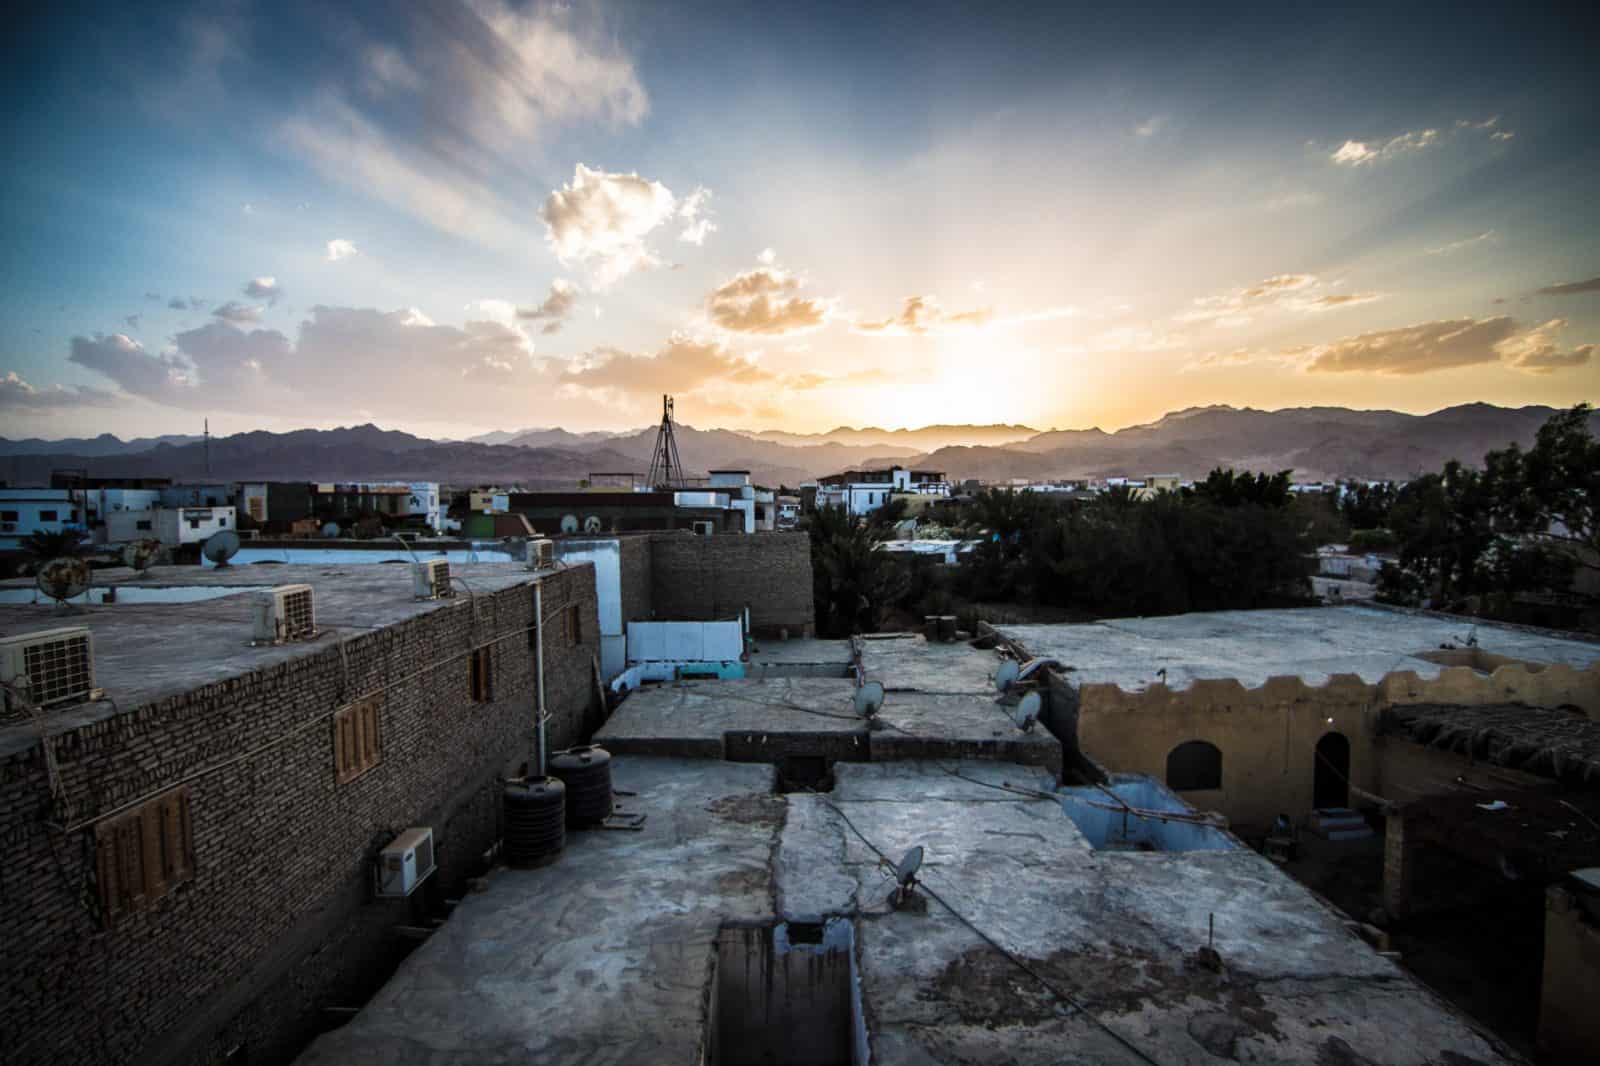 Sunset in Dahab, Egypt